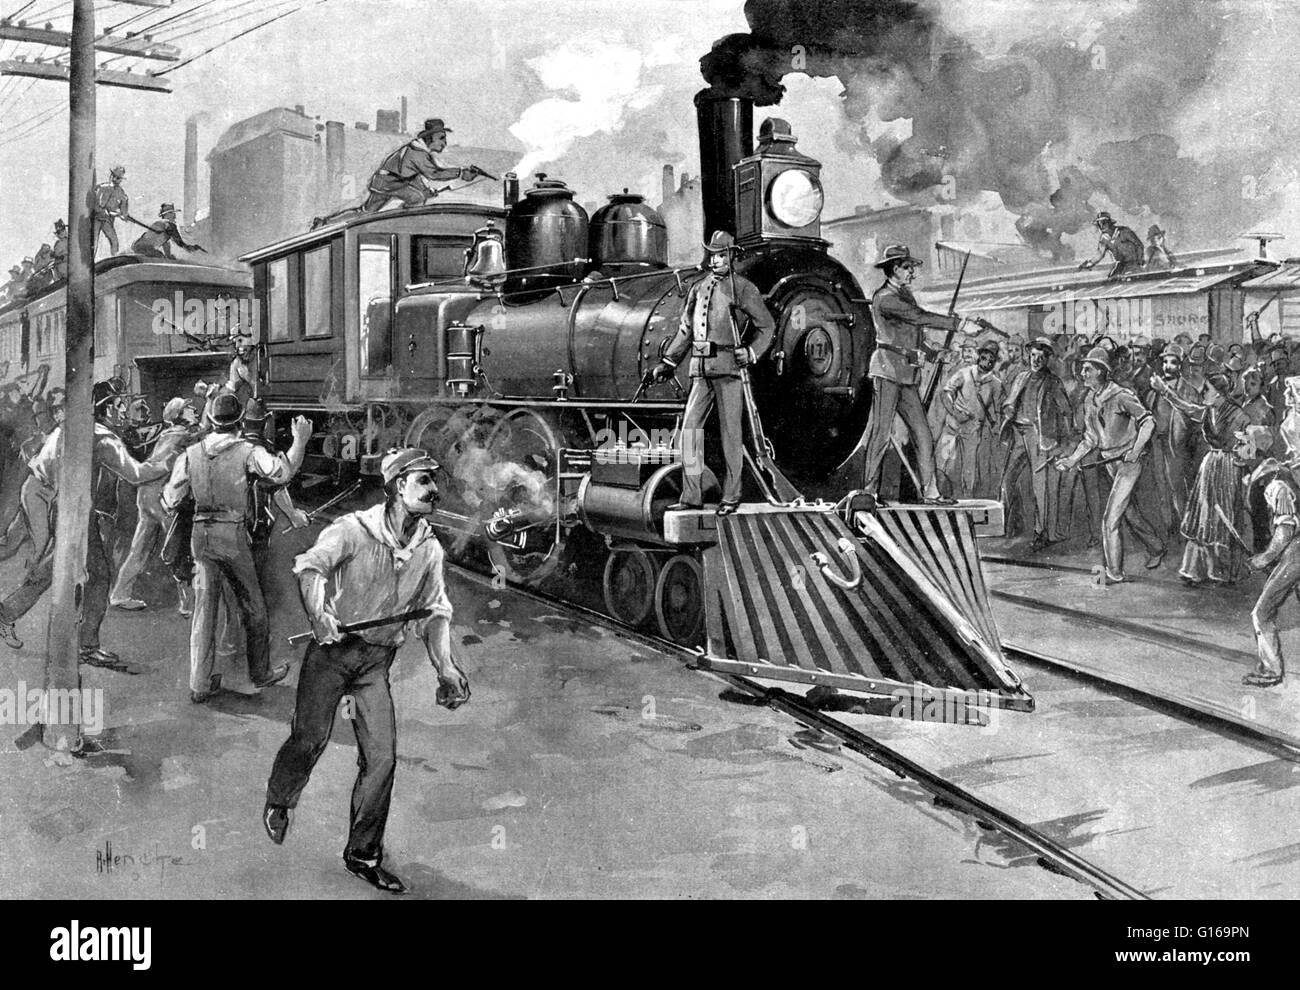 Die Pullman-Streik war ein bundesweit Konflikt im Sommer 1894 zwischen dem neuen American Railway Union (ARU) und Eisenbahnen, die in den Vereinigten Staaten aufgetreten sind. Es Herunterfahren ein Großteil des Landes Güter- und Personenverkehr westlich von Detroit, Michigan. Der Konflikt begann die Stadt Pullman, Illinois, am 11. Mai fast 4.000 Mitarbeiter der Pullman Palace Car Company einen wilden Streik als Reaktion auf den letzten Kürzungen bei den Löhnen begann. Die meisten Fabrikarbeiter Pullmanwagen gebaut lebte in der geplanten Arbeiter Gemeinschaft von Pullman. Als seine Firma Arbeitnehmer entlassene und Löhne gesenkt, es habe keine Stockfoto